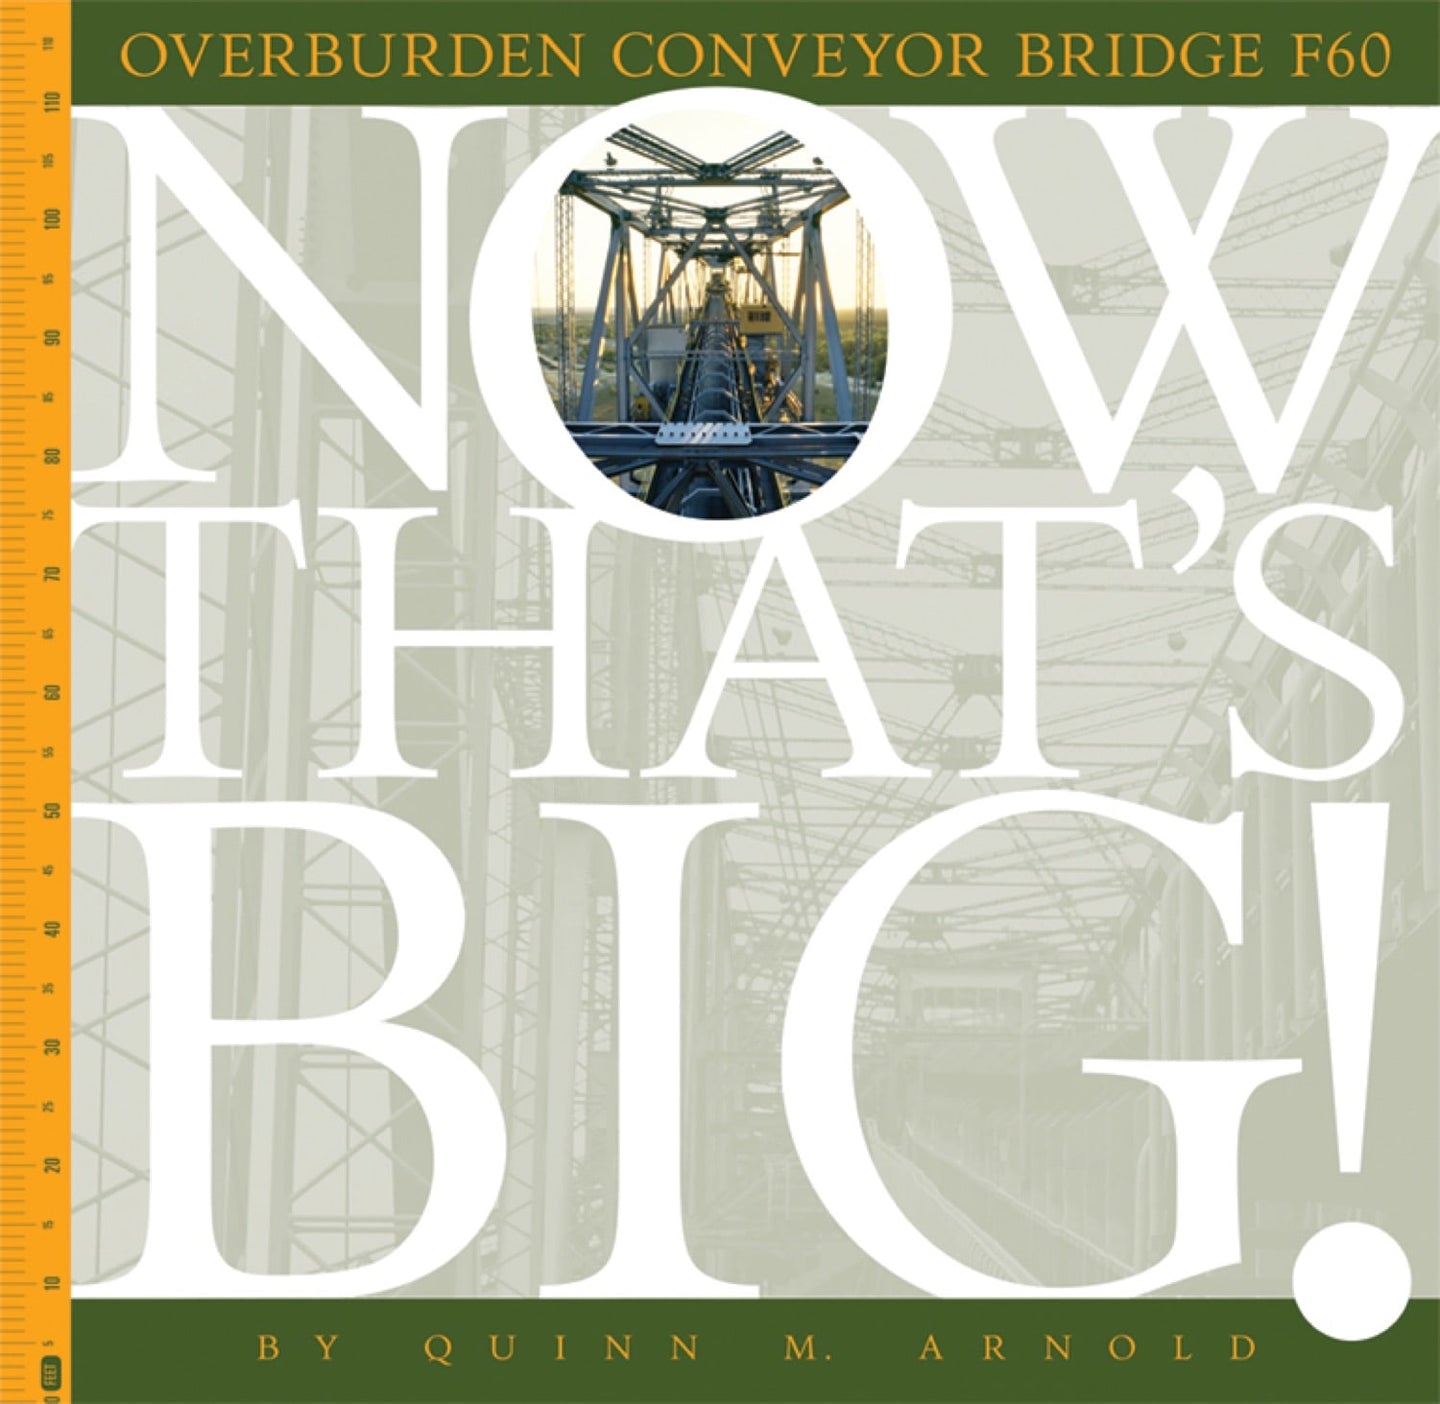 Now That's Big!: Overburden Conveyor Bridge F60